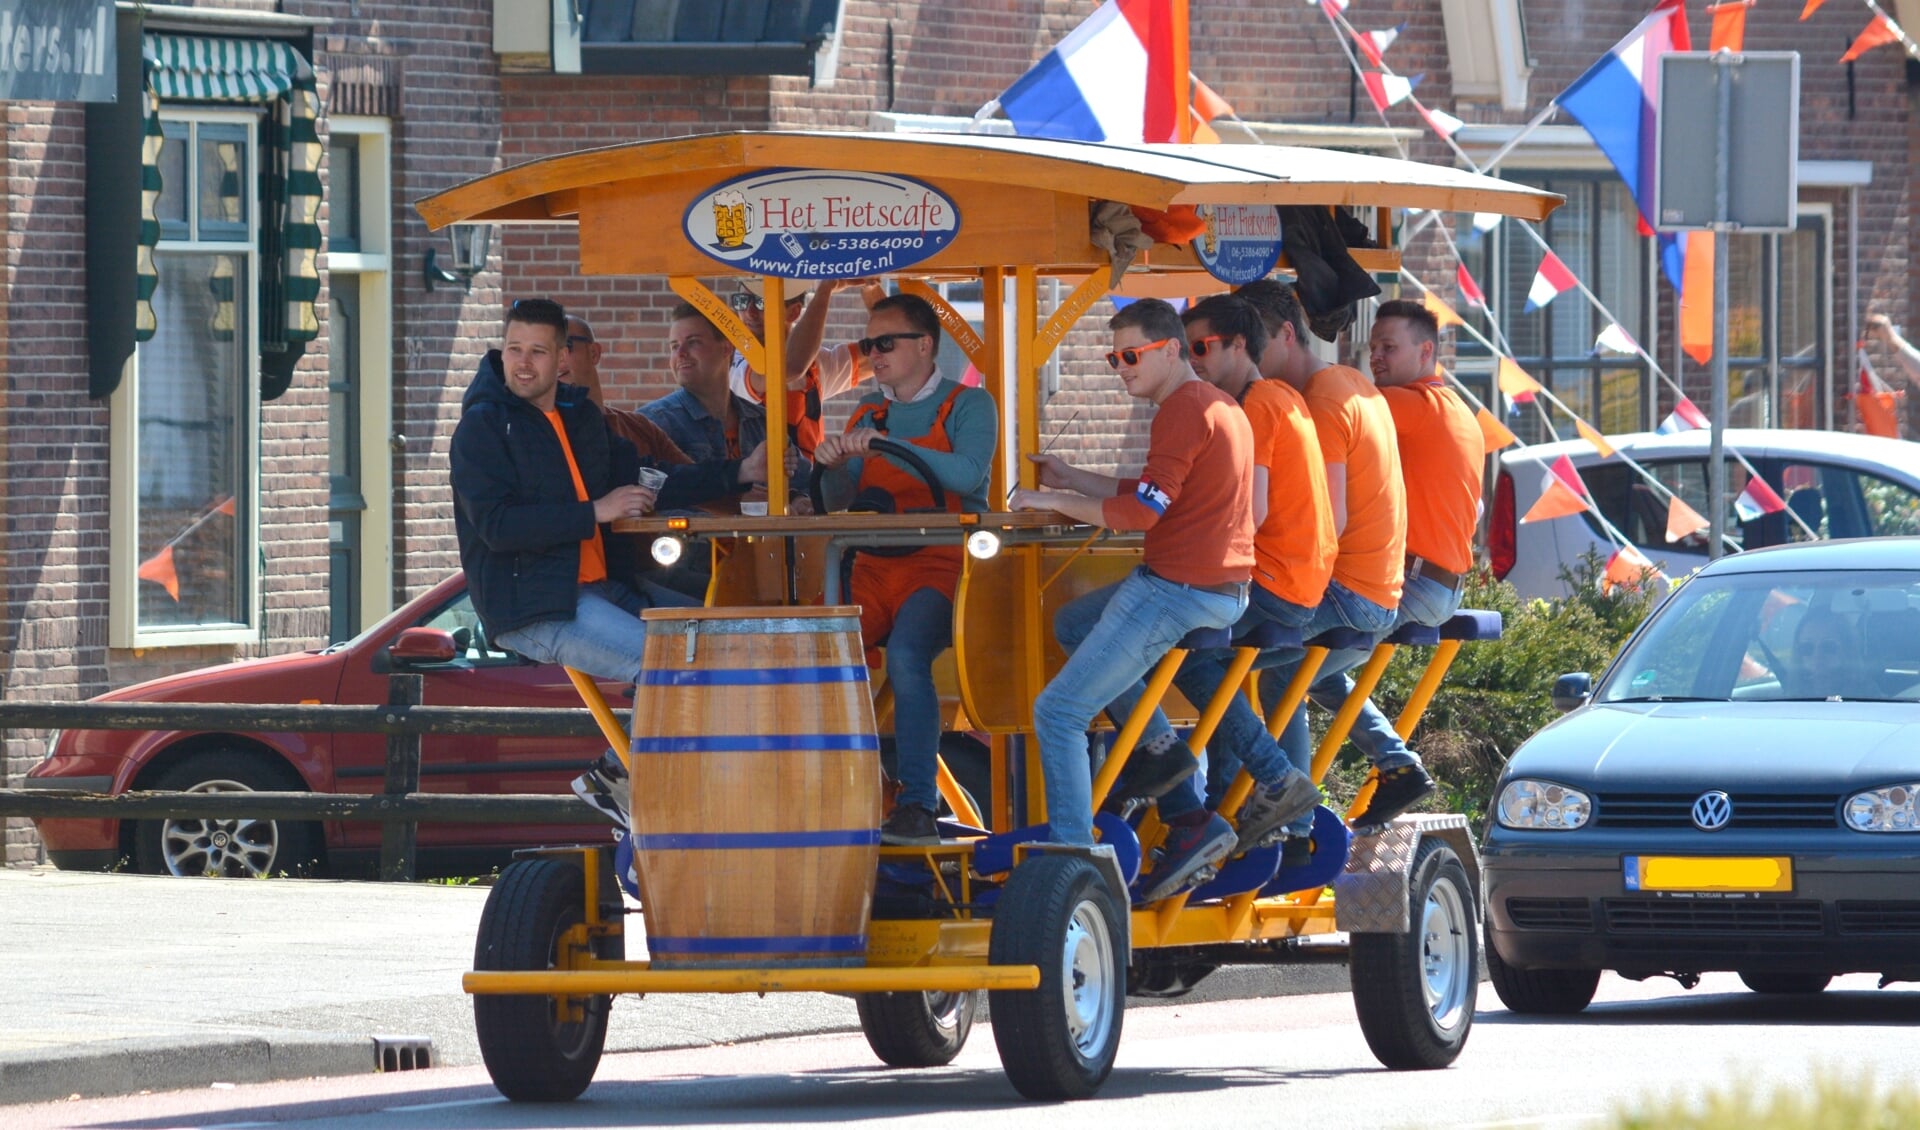 Jongeren genietend op het 'fietscafe' t.h.v de Van Dompselaerstraat in Barneveld. De bierfiets wordt in Barneveld wat aan banden gelegd.